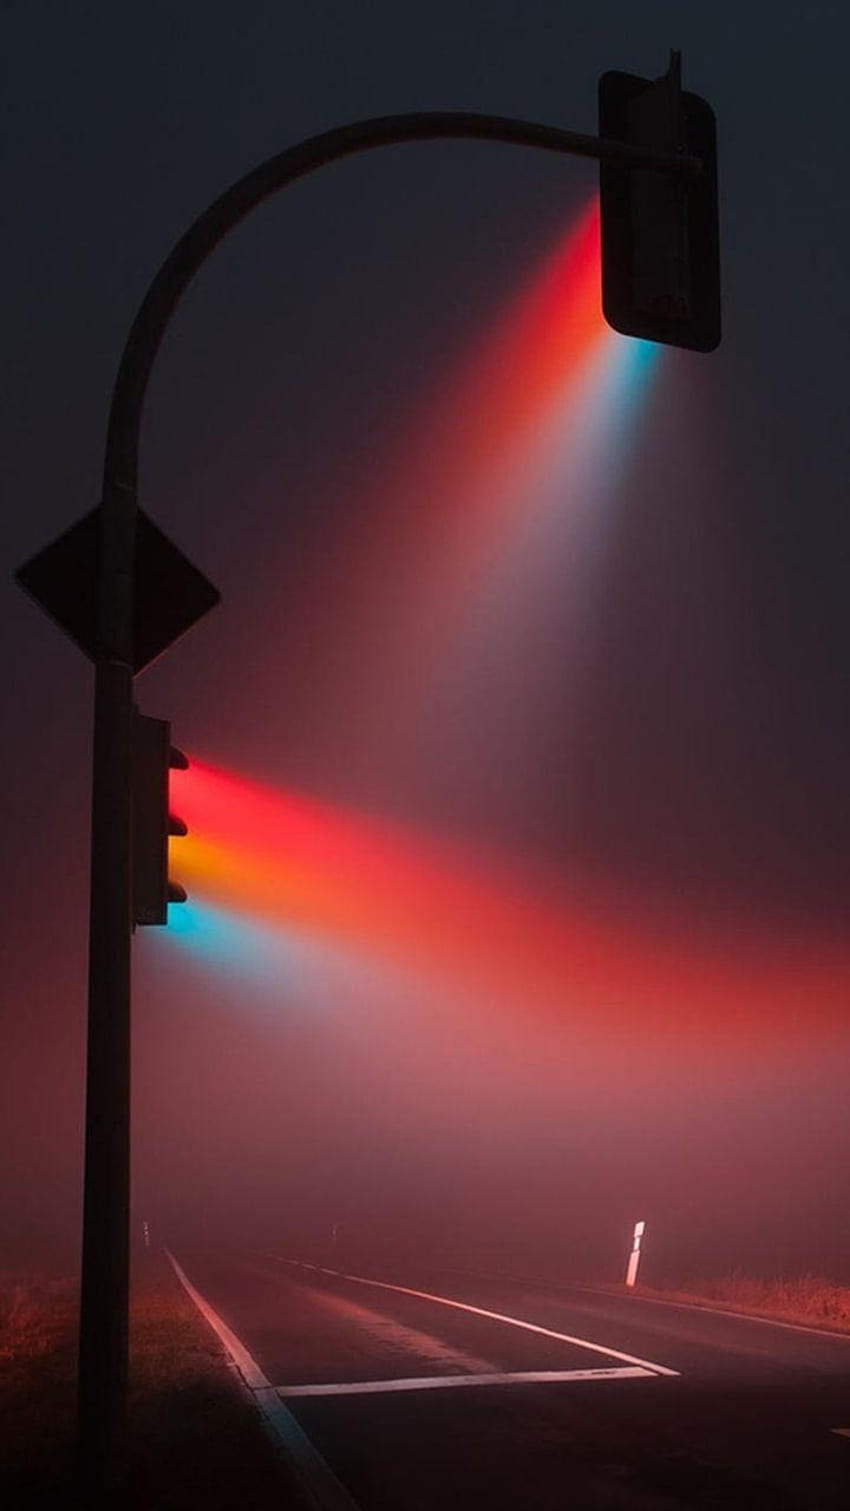 Lampu lalu lintas berwarna-warni di malam hari. Lampu Kota iPhone, lampu jalan wallpaper ponsel HD